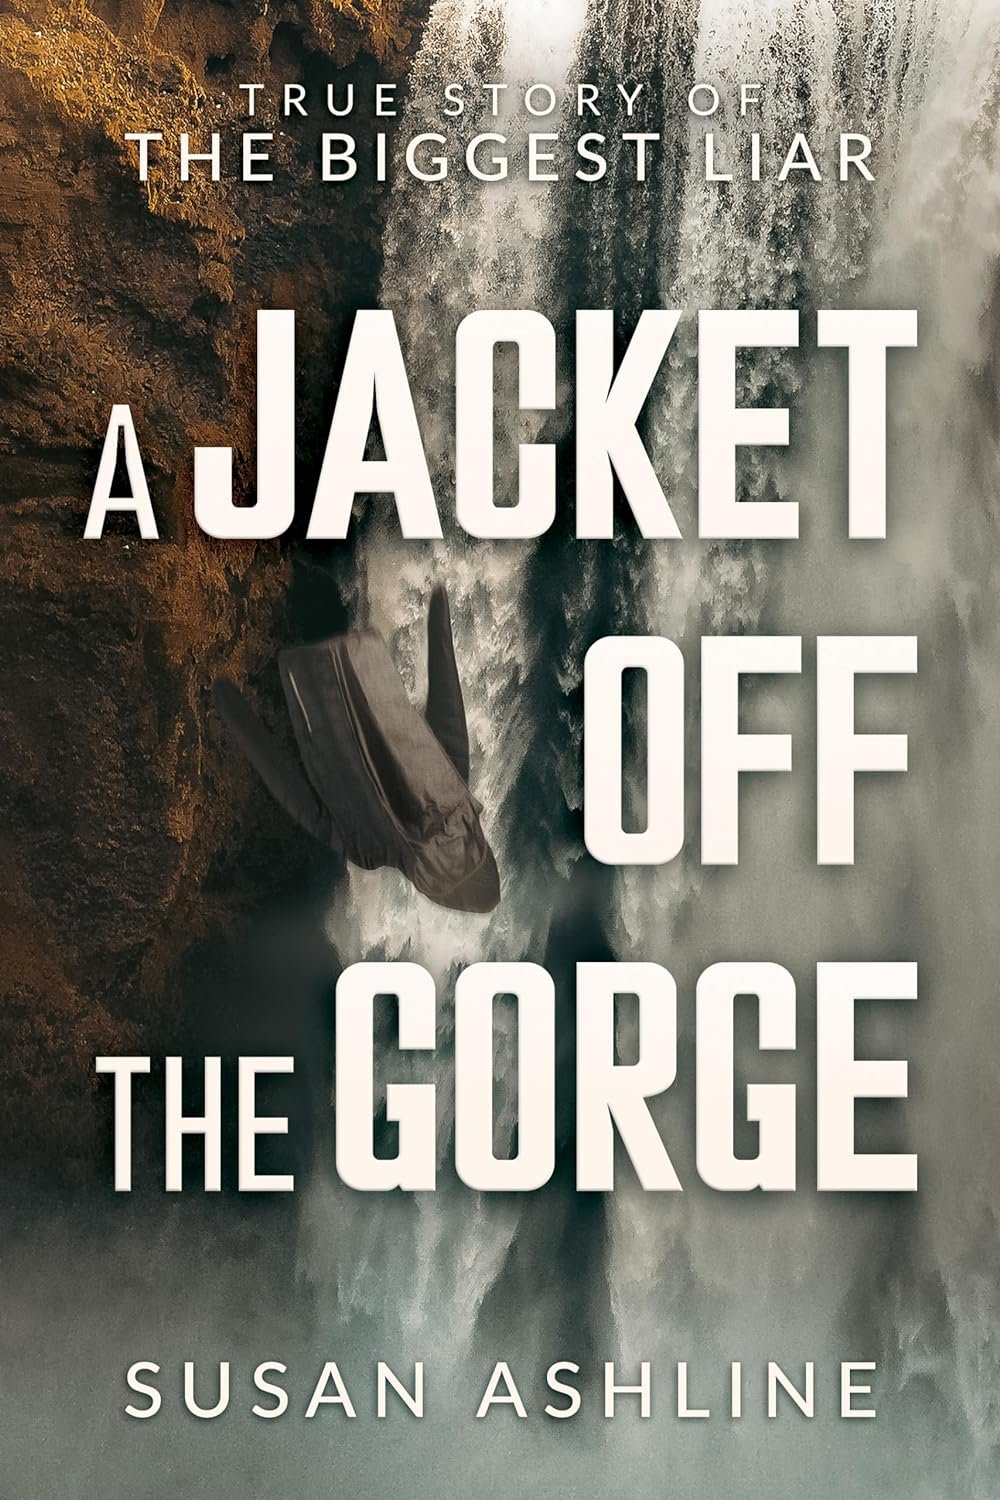 jacket off the gorge .jpeg